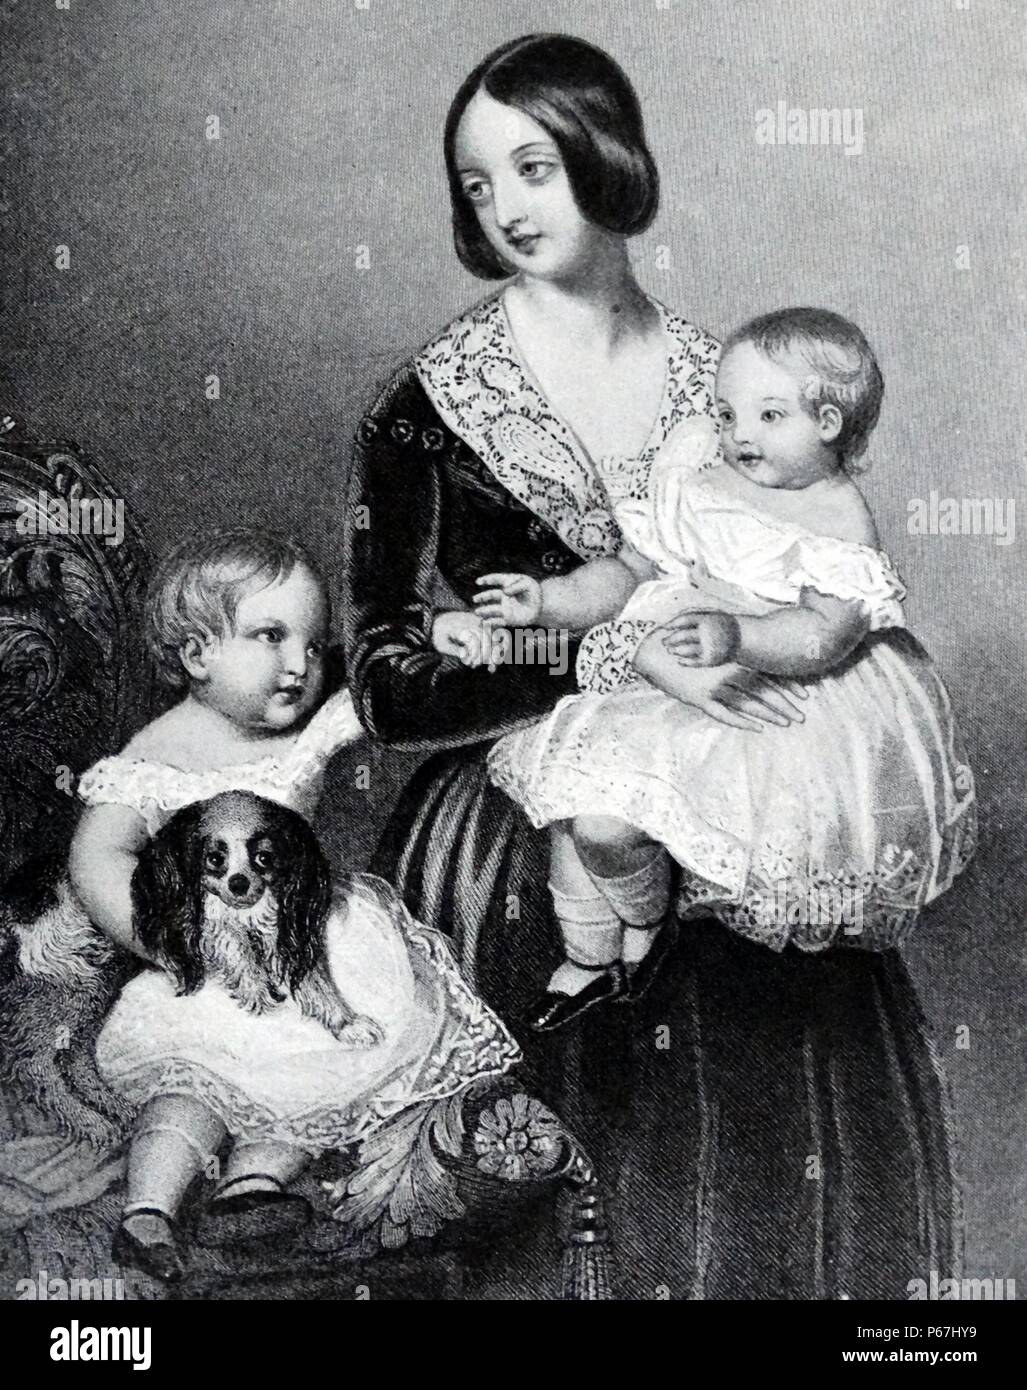 La reine Victoria de Grande-Bretagne avec le prince de Galles (futur roi Édouard VII) et la Princesse Royale en 1845 Banque D'Images